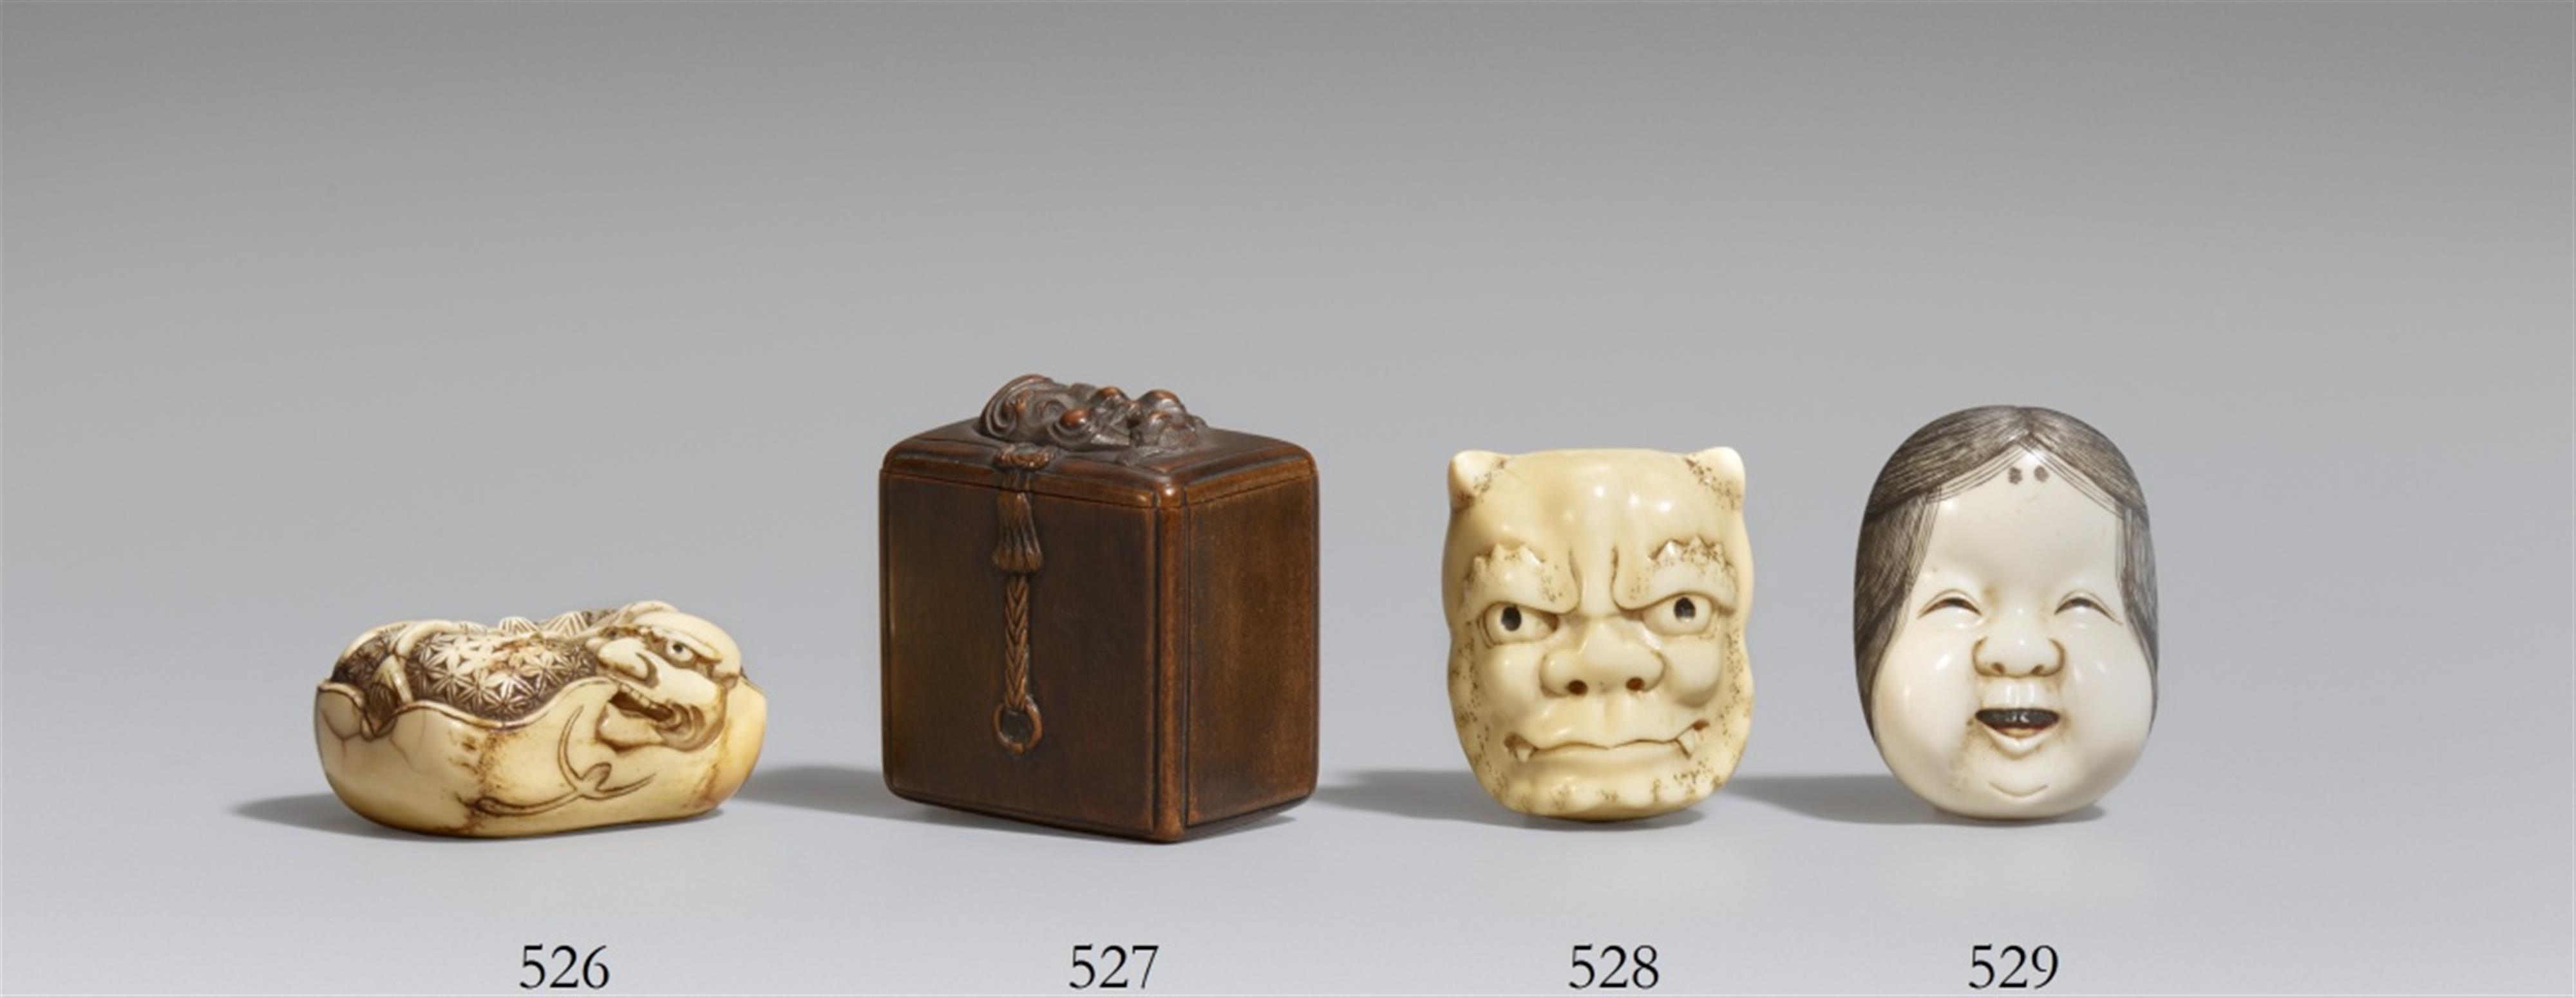 Maskenkasten mit aufliegender nô-Maske vom Typ Waraijô. Holz. 2. Hälfte 19. Jh. - image-1